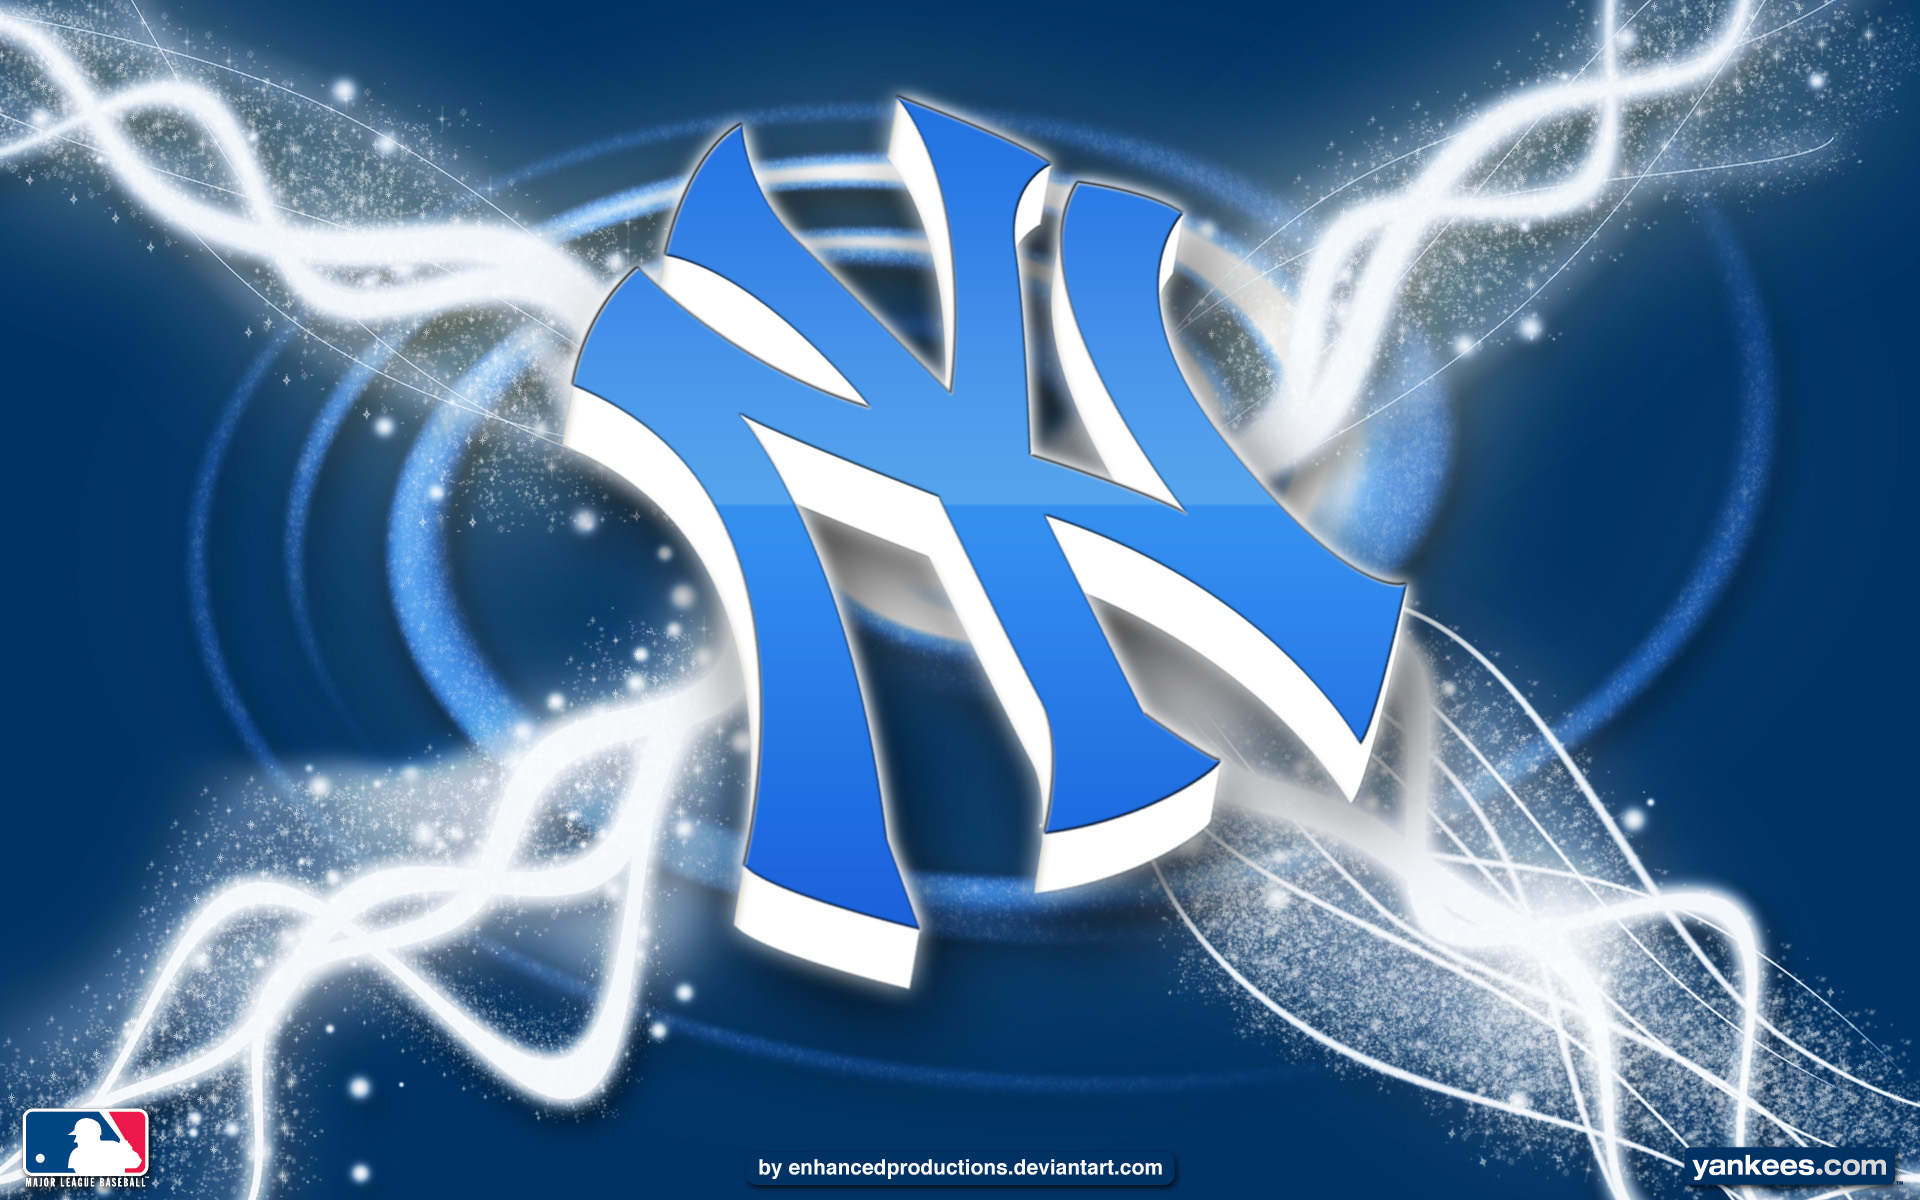 New York Yankees HD Wallpapers - Top Free New York Yankees HD